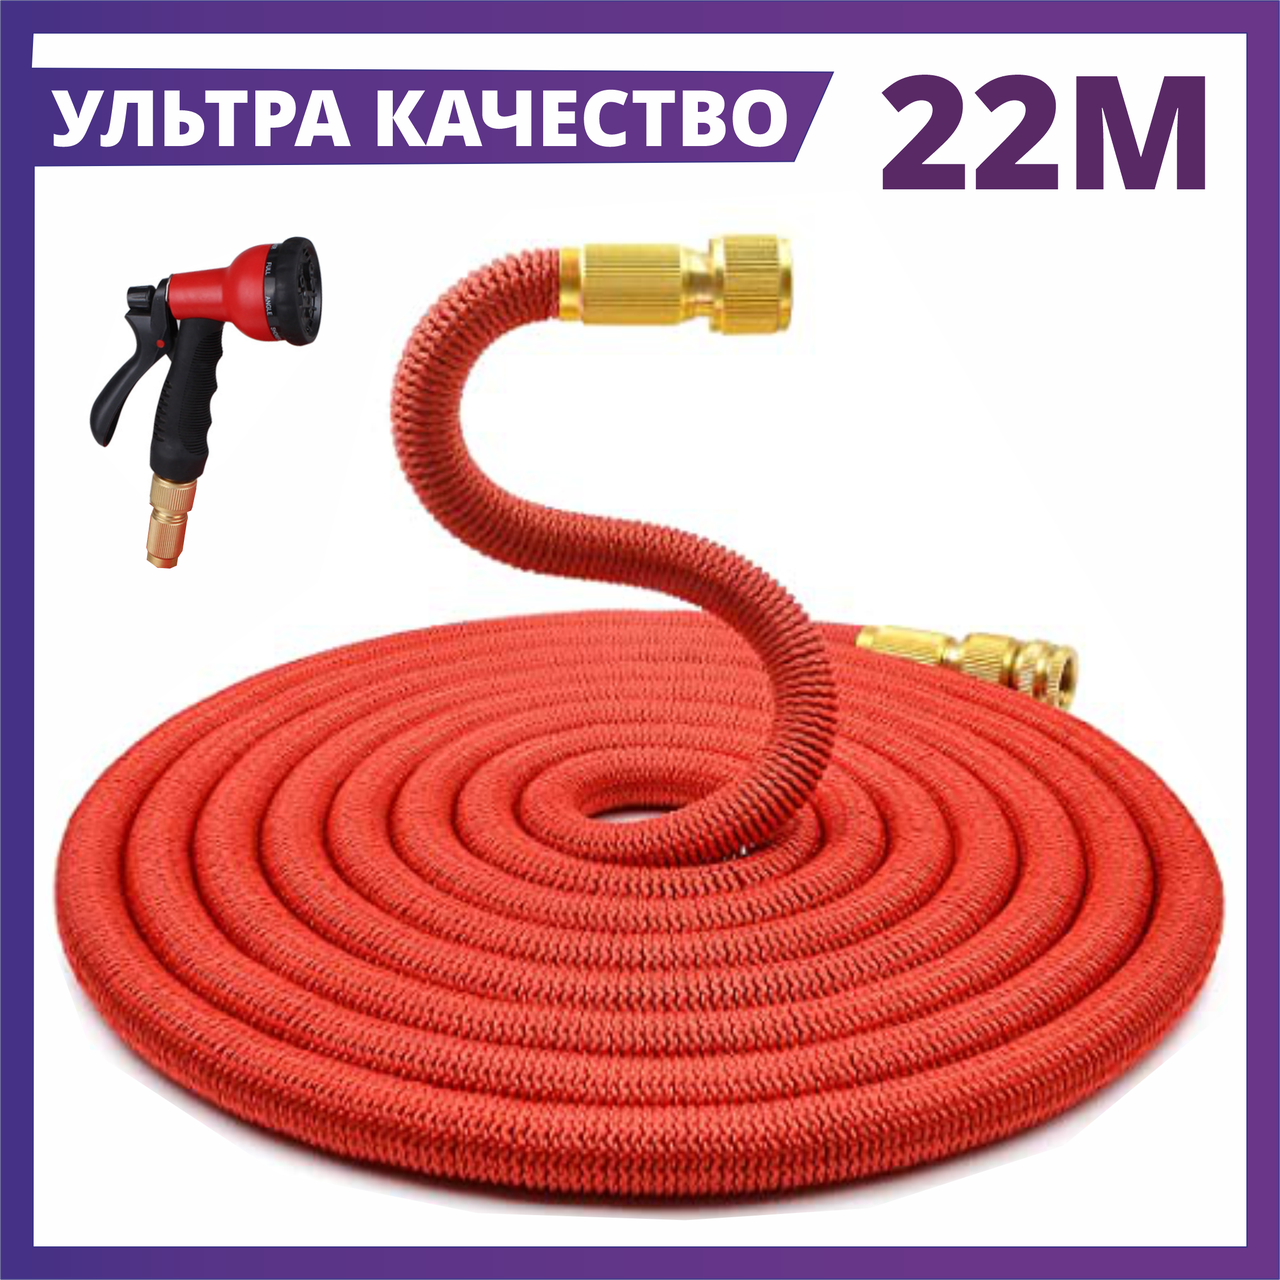 ✅ УЛЬТРА КАЧЕСТВО - Шланг для полива саморастягивающийся 22 м, шланг с распылителем, magic hose